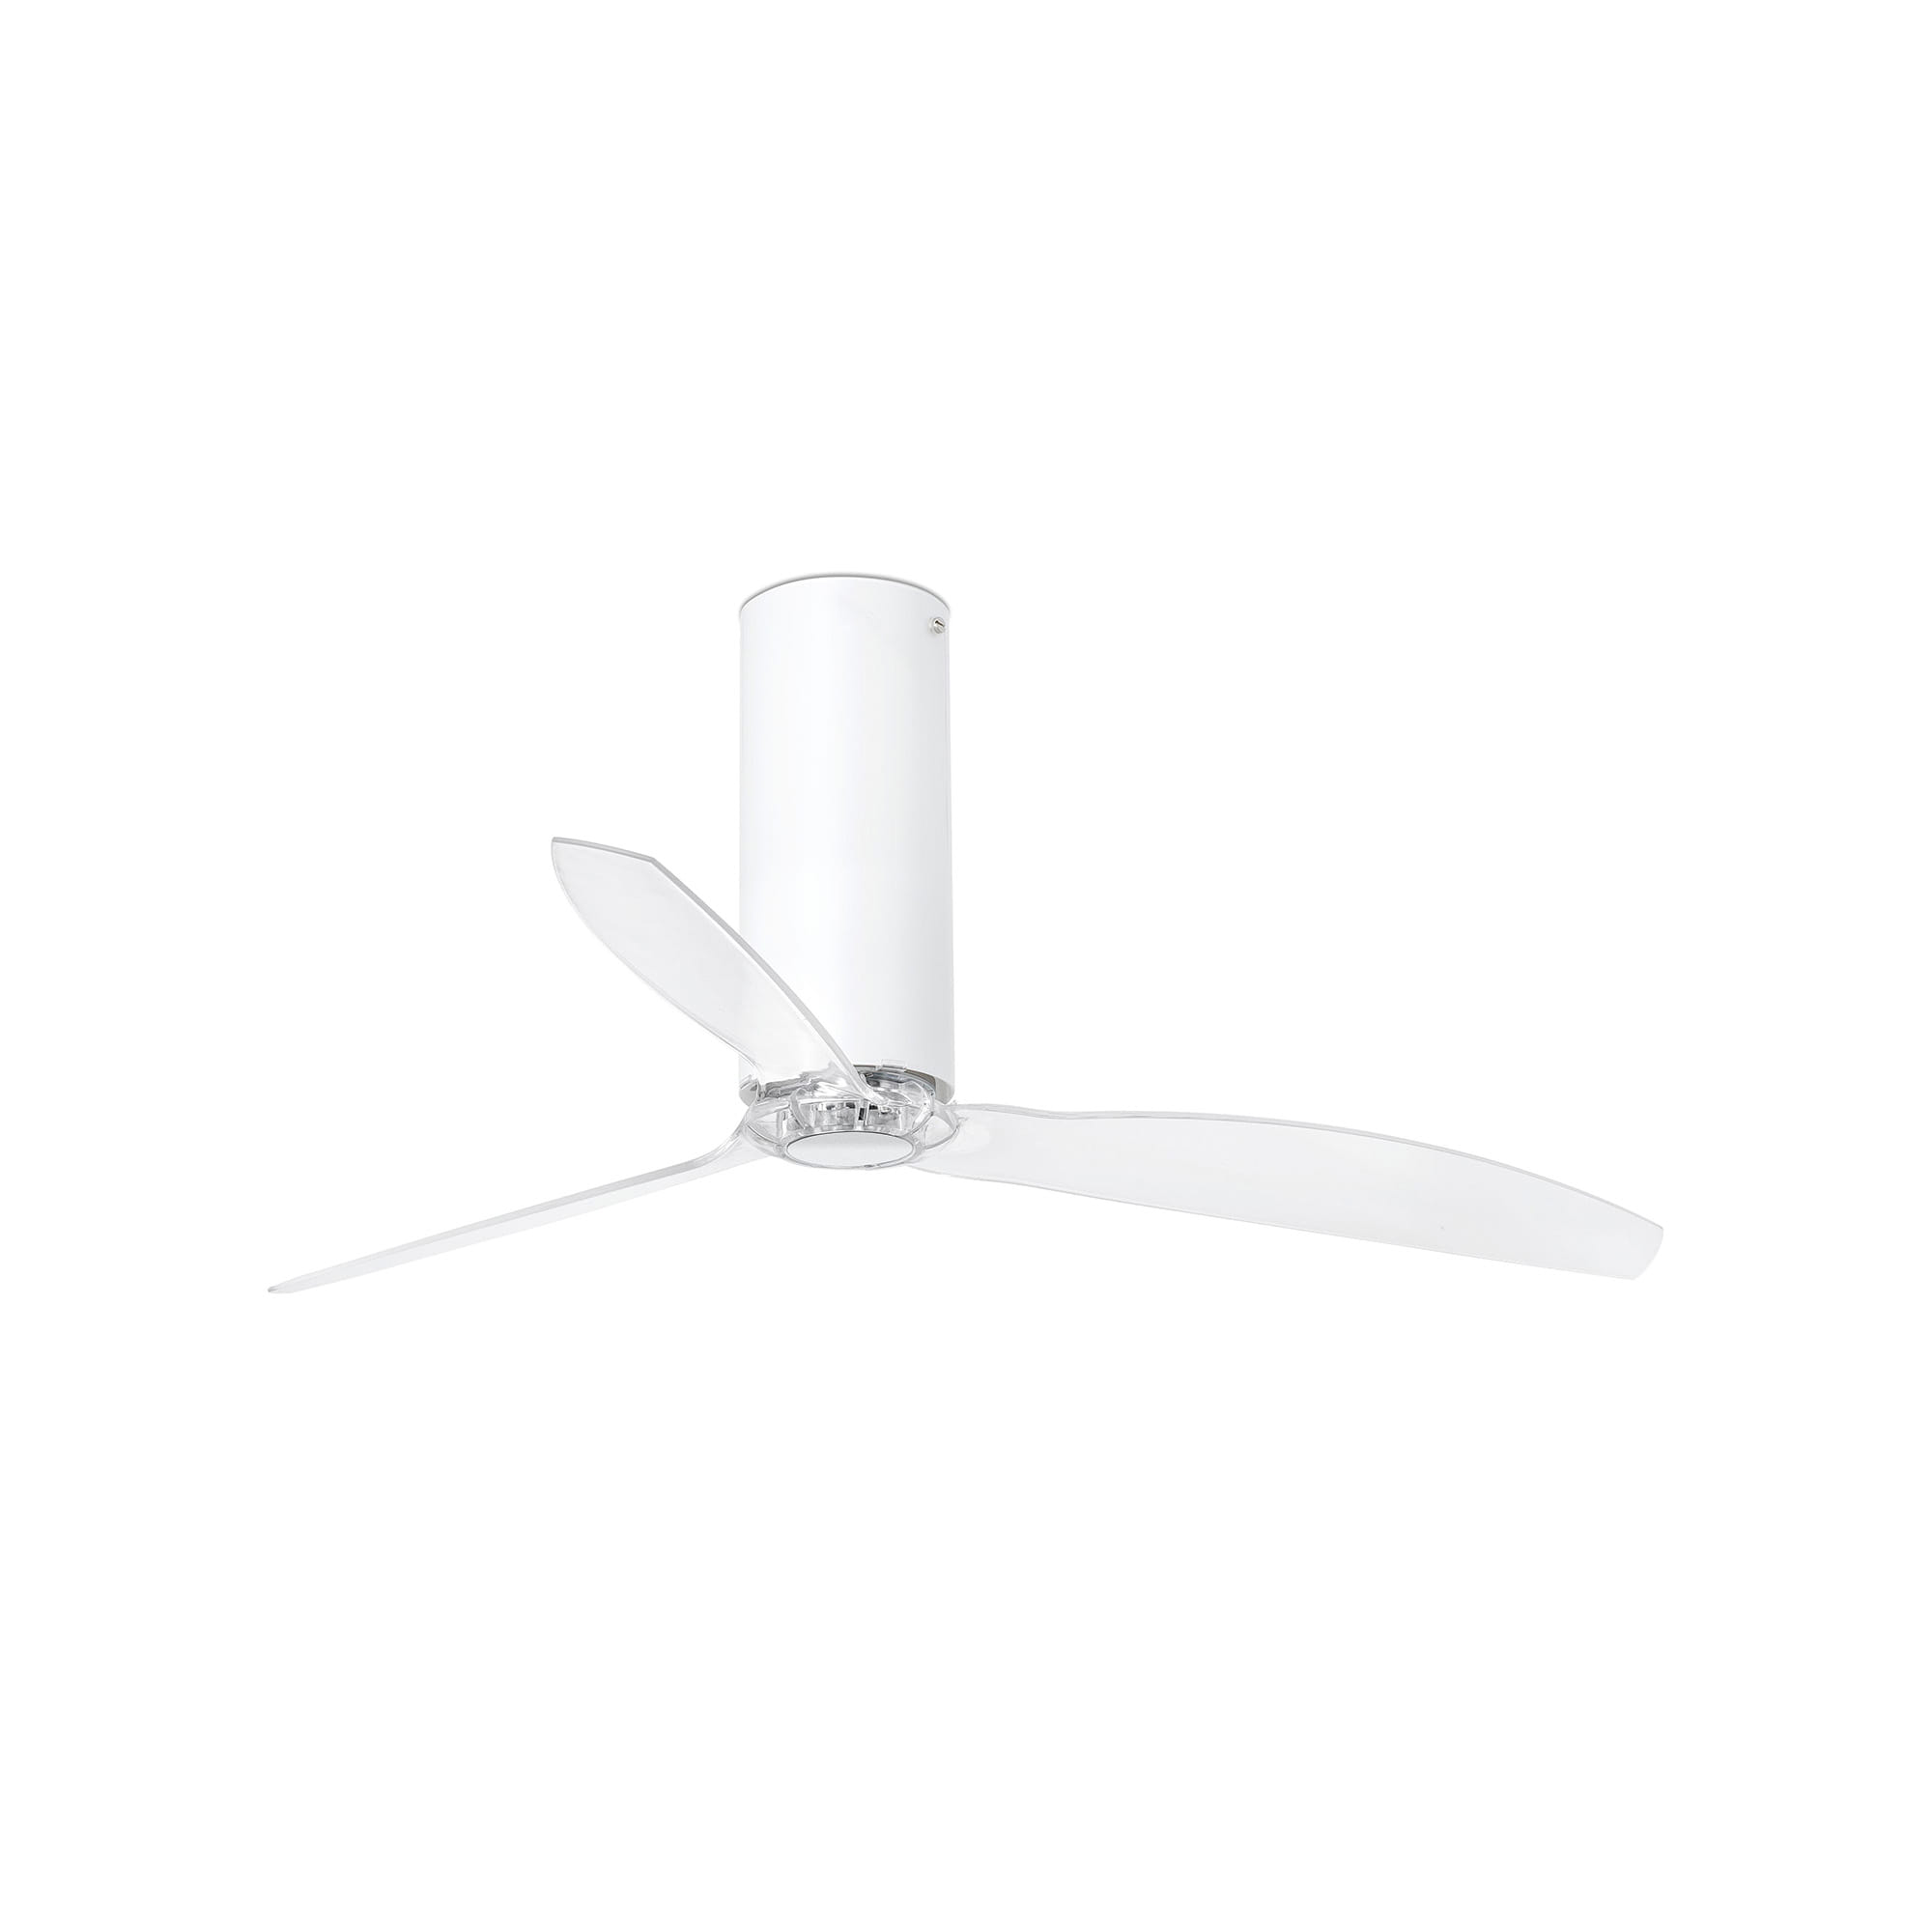 Medialux: Illuminazione, Multimedia, Bricolage - TUBE Ventilatore senza luce  Tube fan ventilatore da soffitto bianco opaco/trasparente Dimensioni:  1280x450x1280mm Faro Lorefar 32034